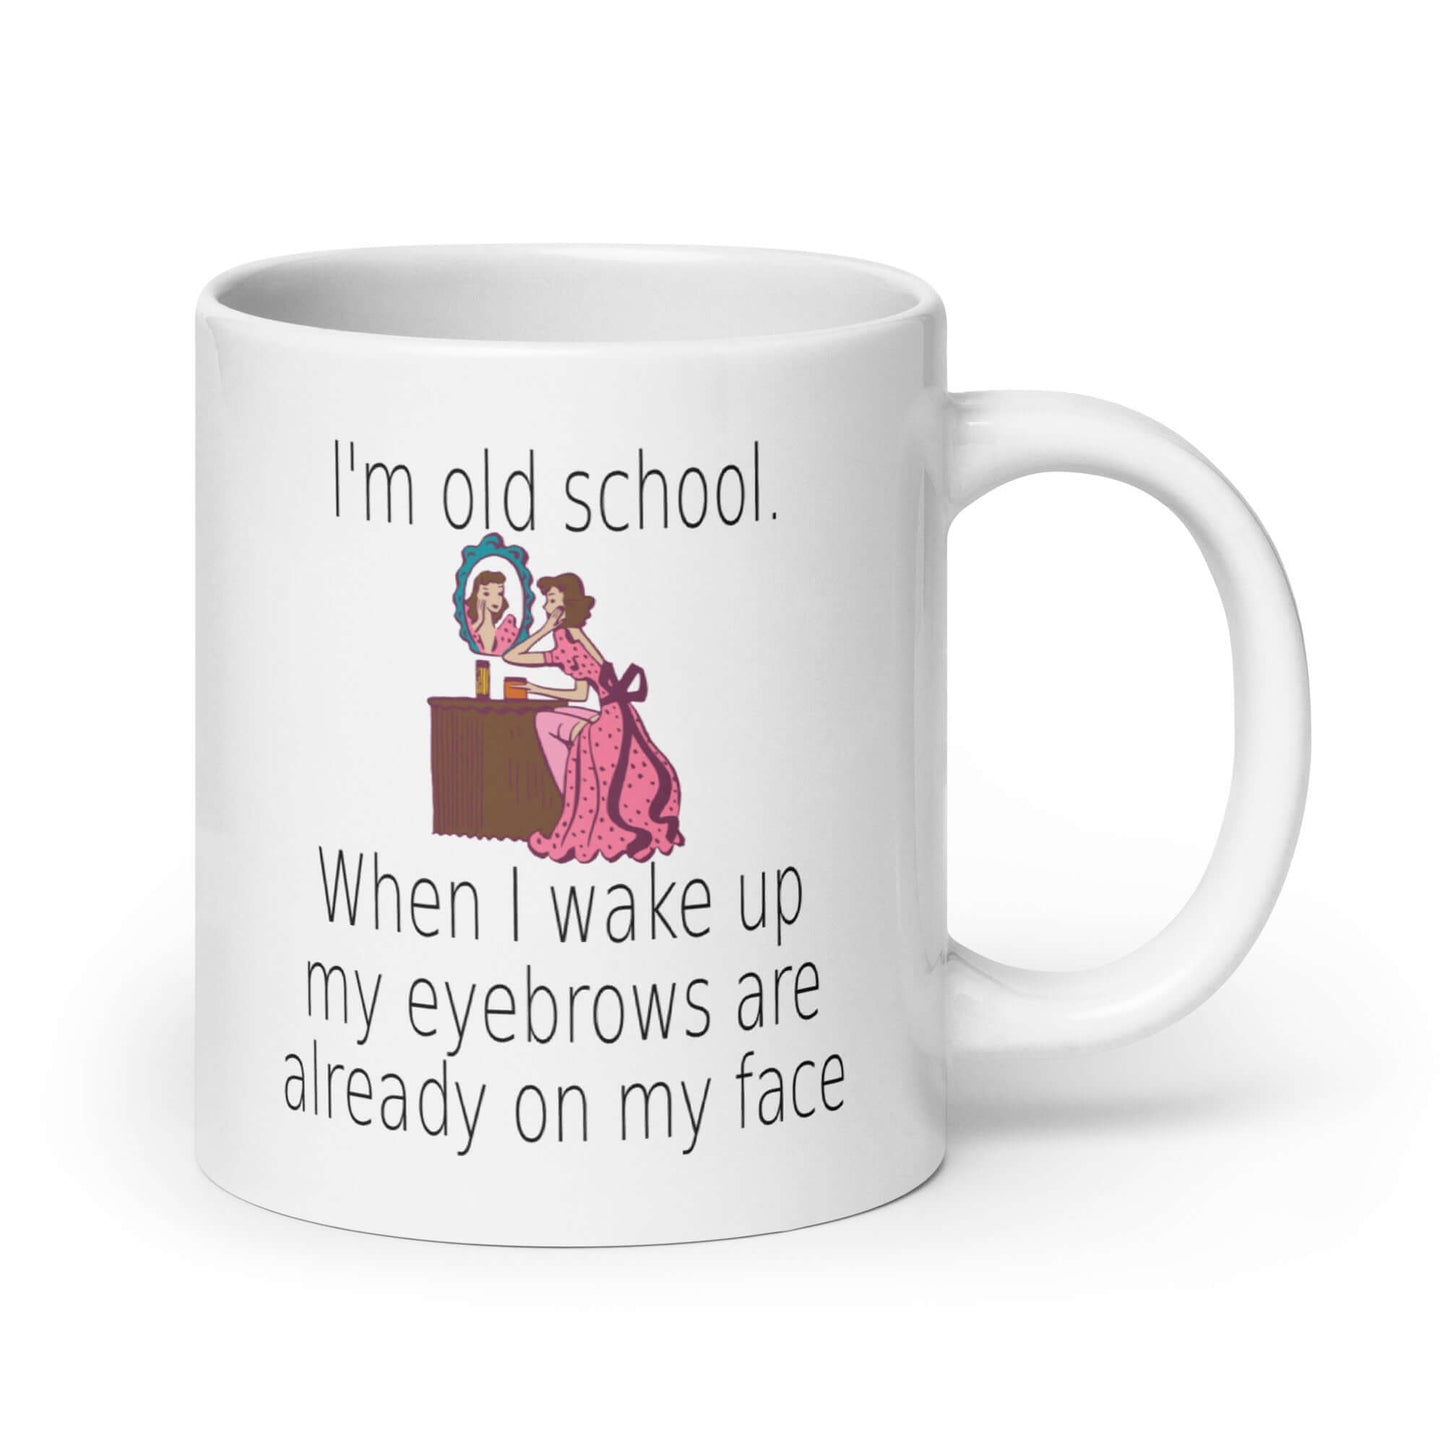 Funny old school eyebrow joke mug